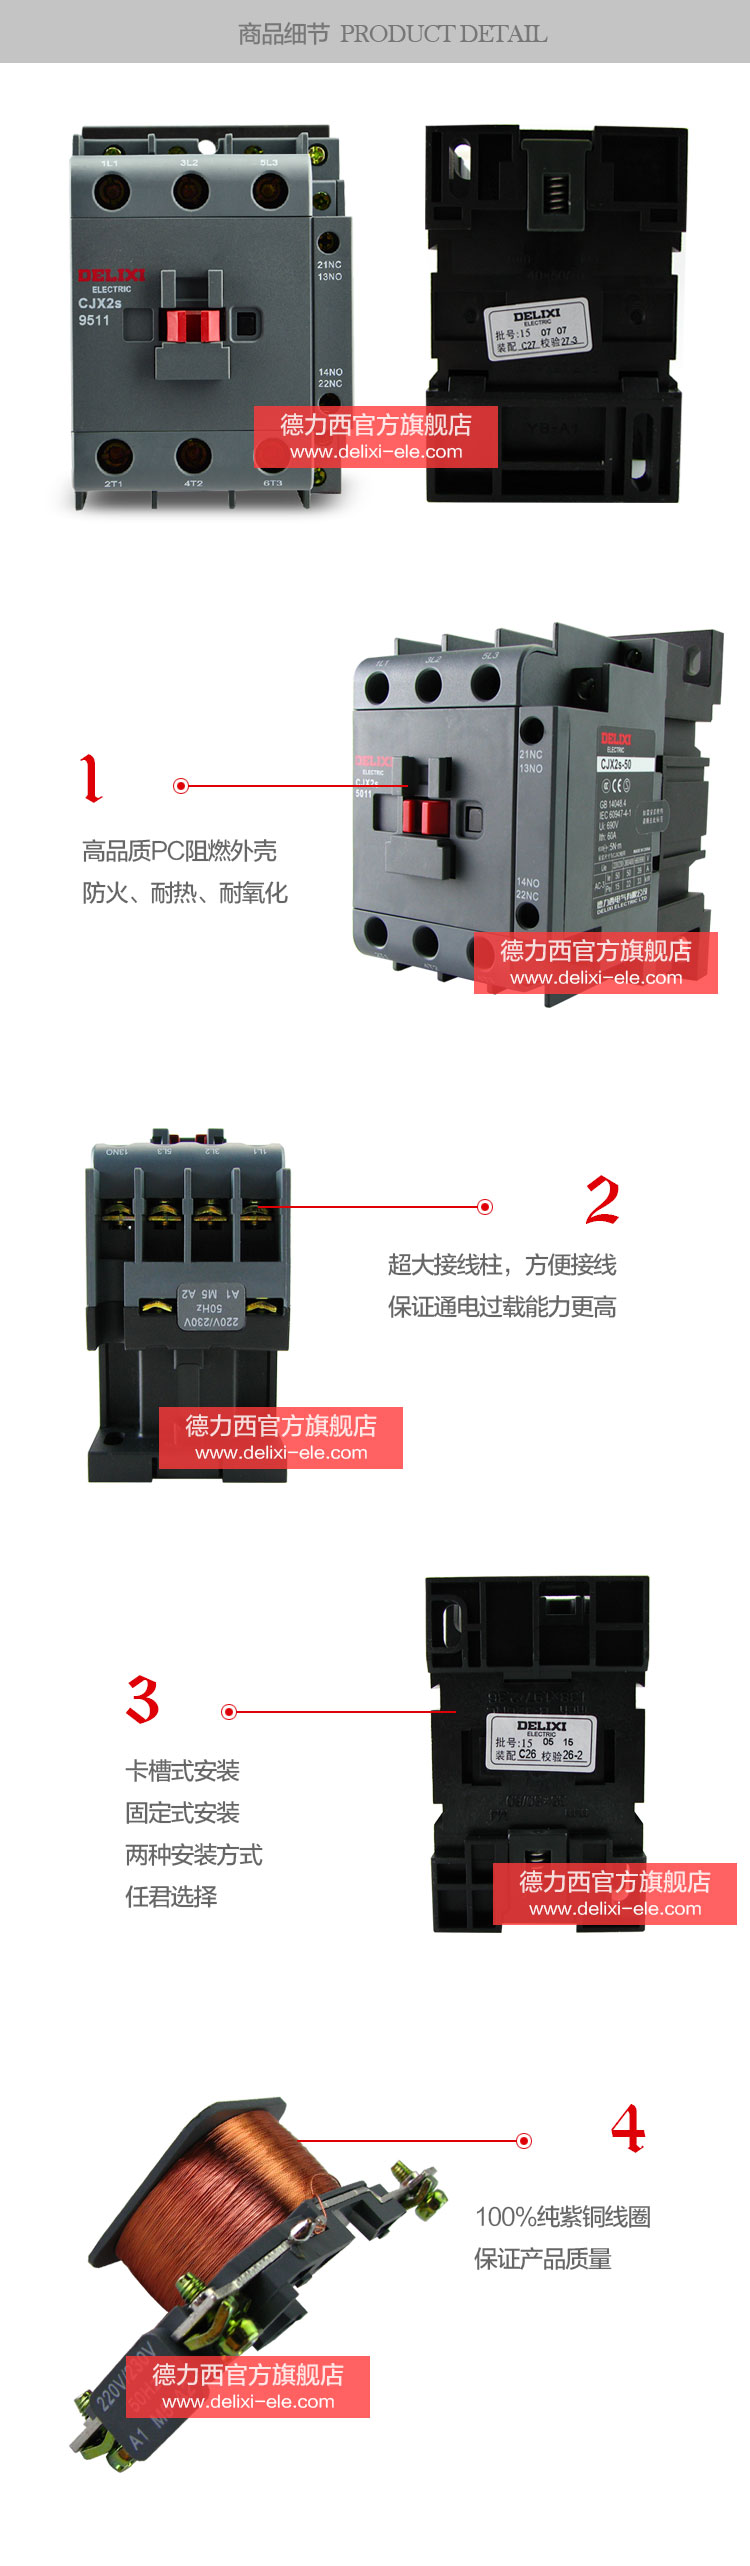 德力西交流接触器CJX2S-6511产品细节展示高品质阻燃材料，防火耐热耐氧化，超大接线柱卡槽式安装，100%纯紫铜线圈